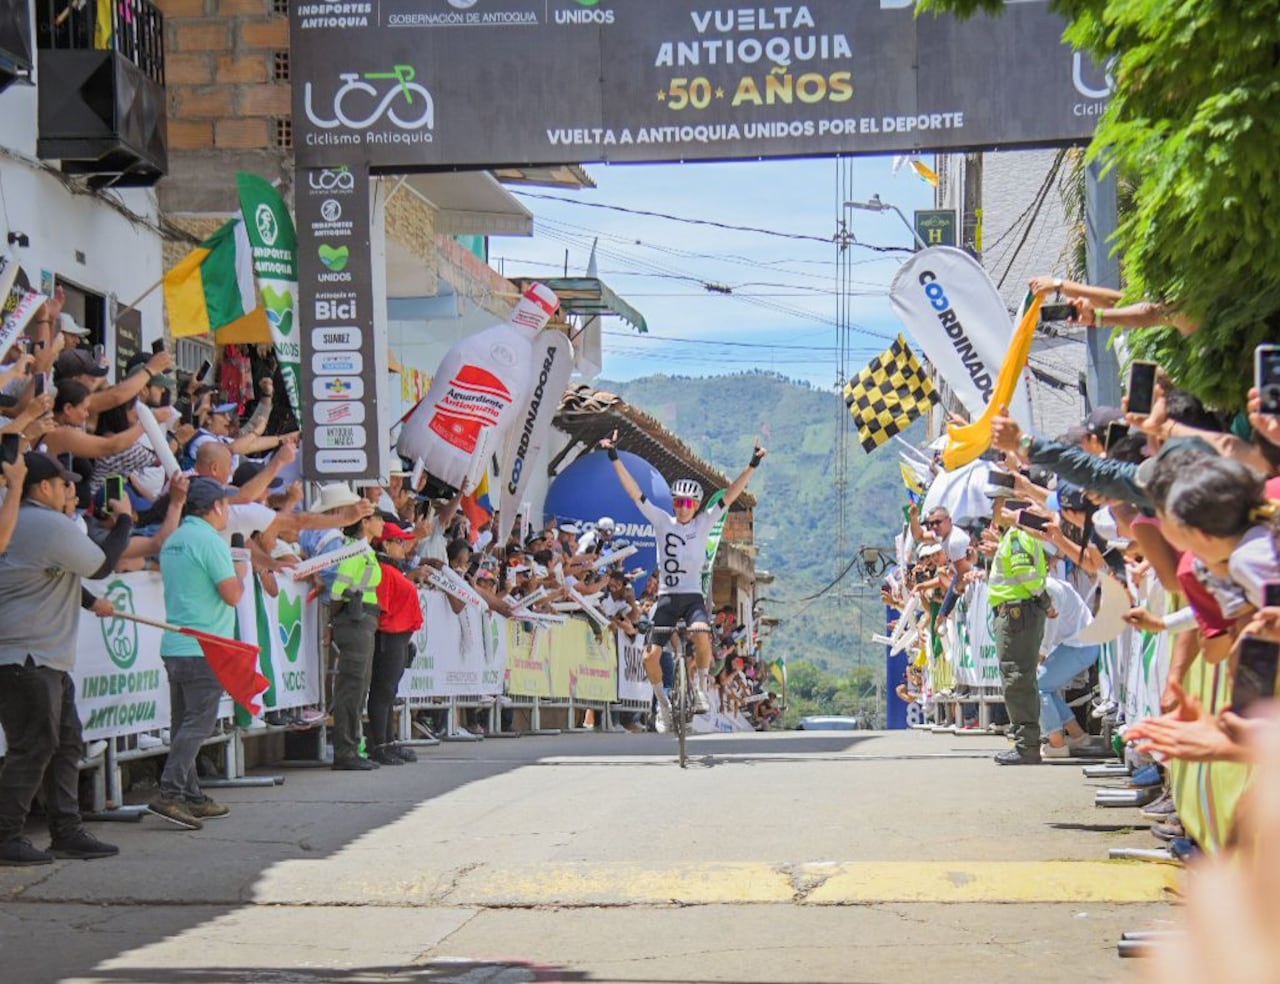 Esta será la primera vez en más de 50 años que la Vuelta a Antioquia pasará por Urrao.